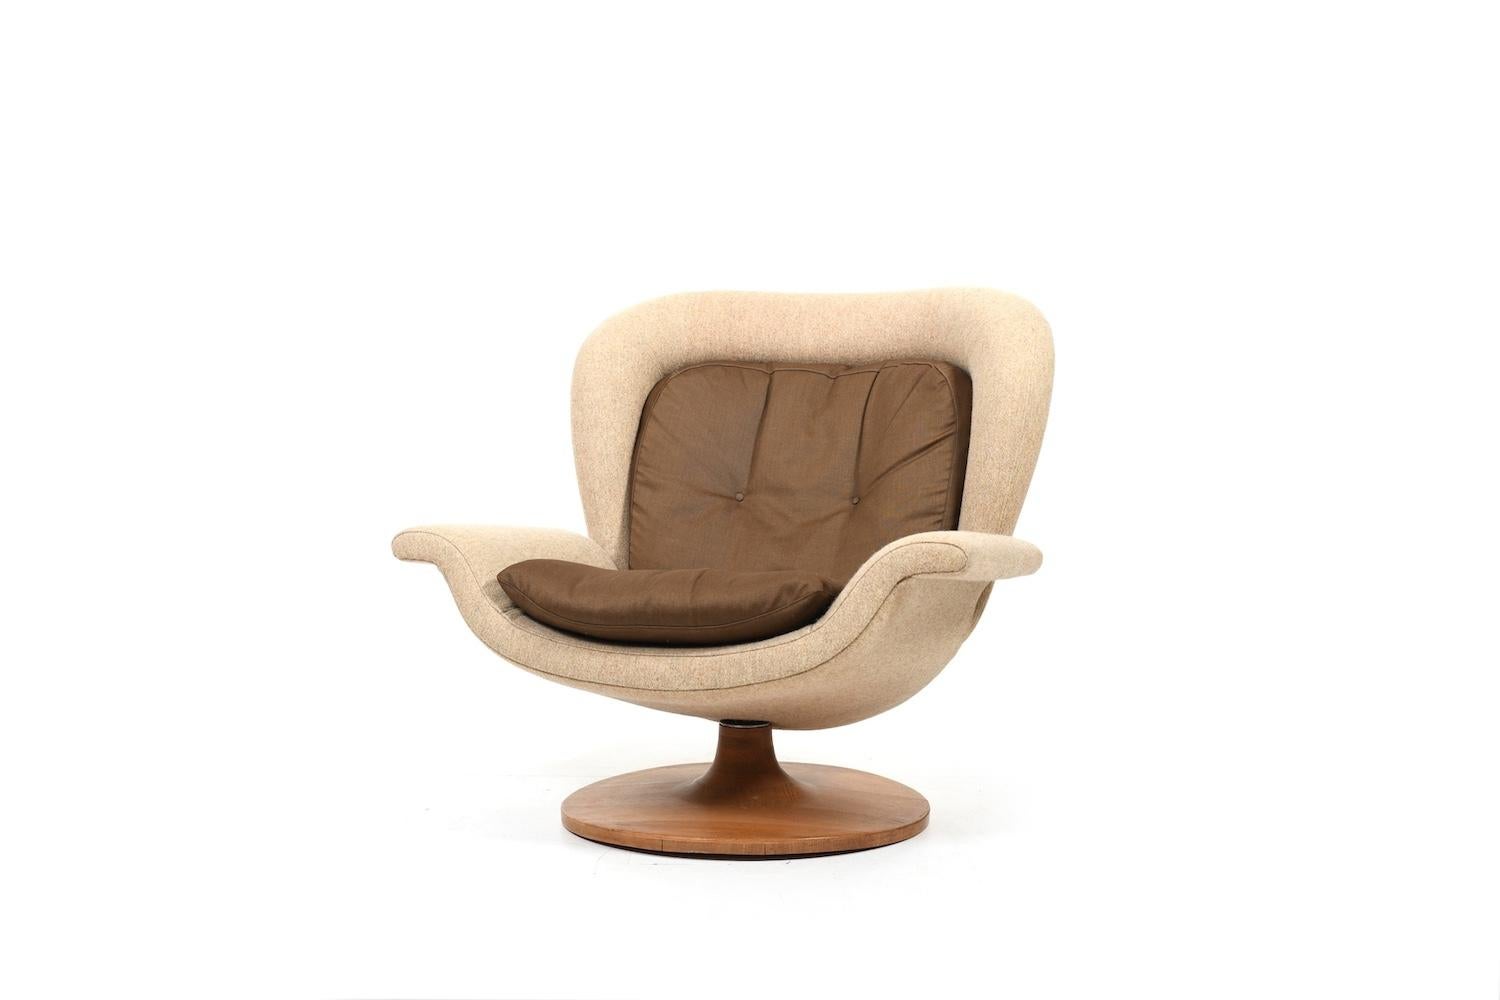 Swivel lounge chair by John Mortensen for Poul M. Jessen -Java PMJ) Denmark. In original fabric. Solid oak swivel base. 1960s/70s.